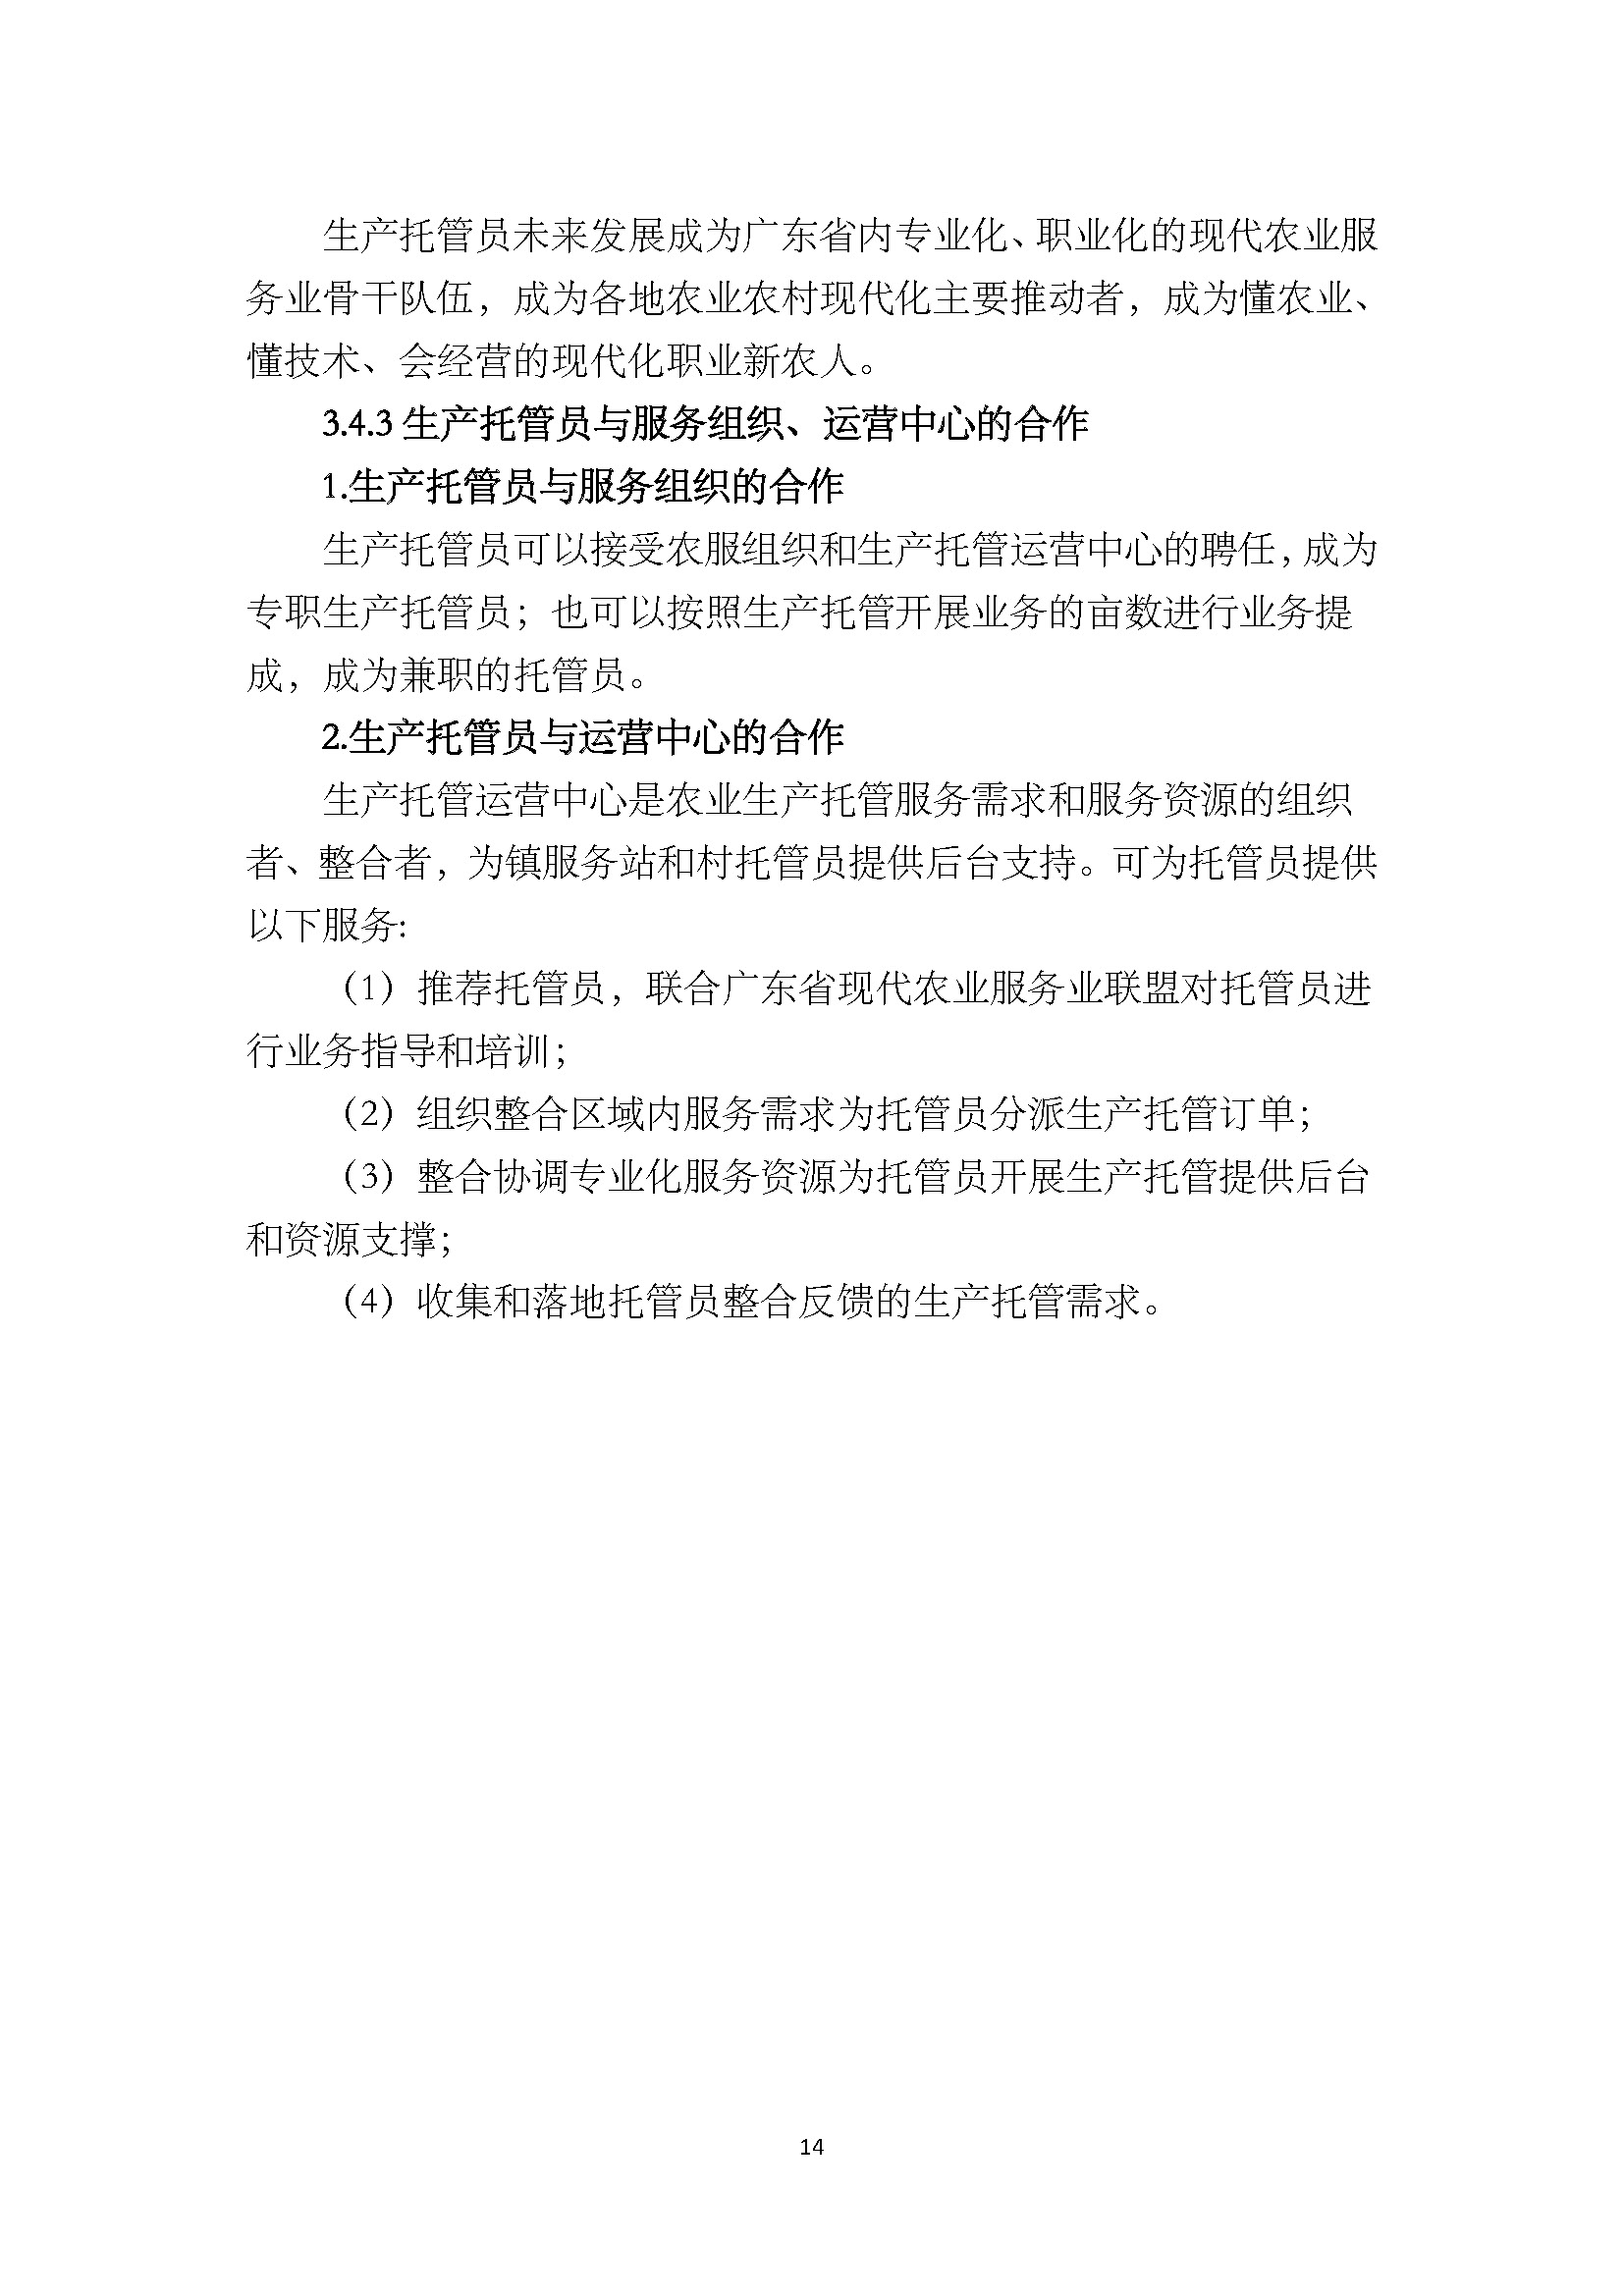 1.广东省农业生产托管服务工作手册_页面_16.jpg